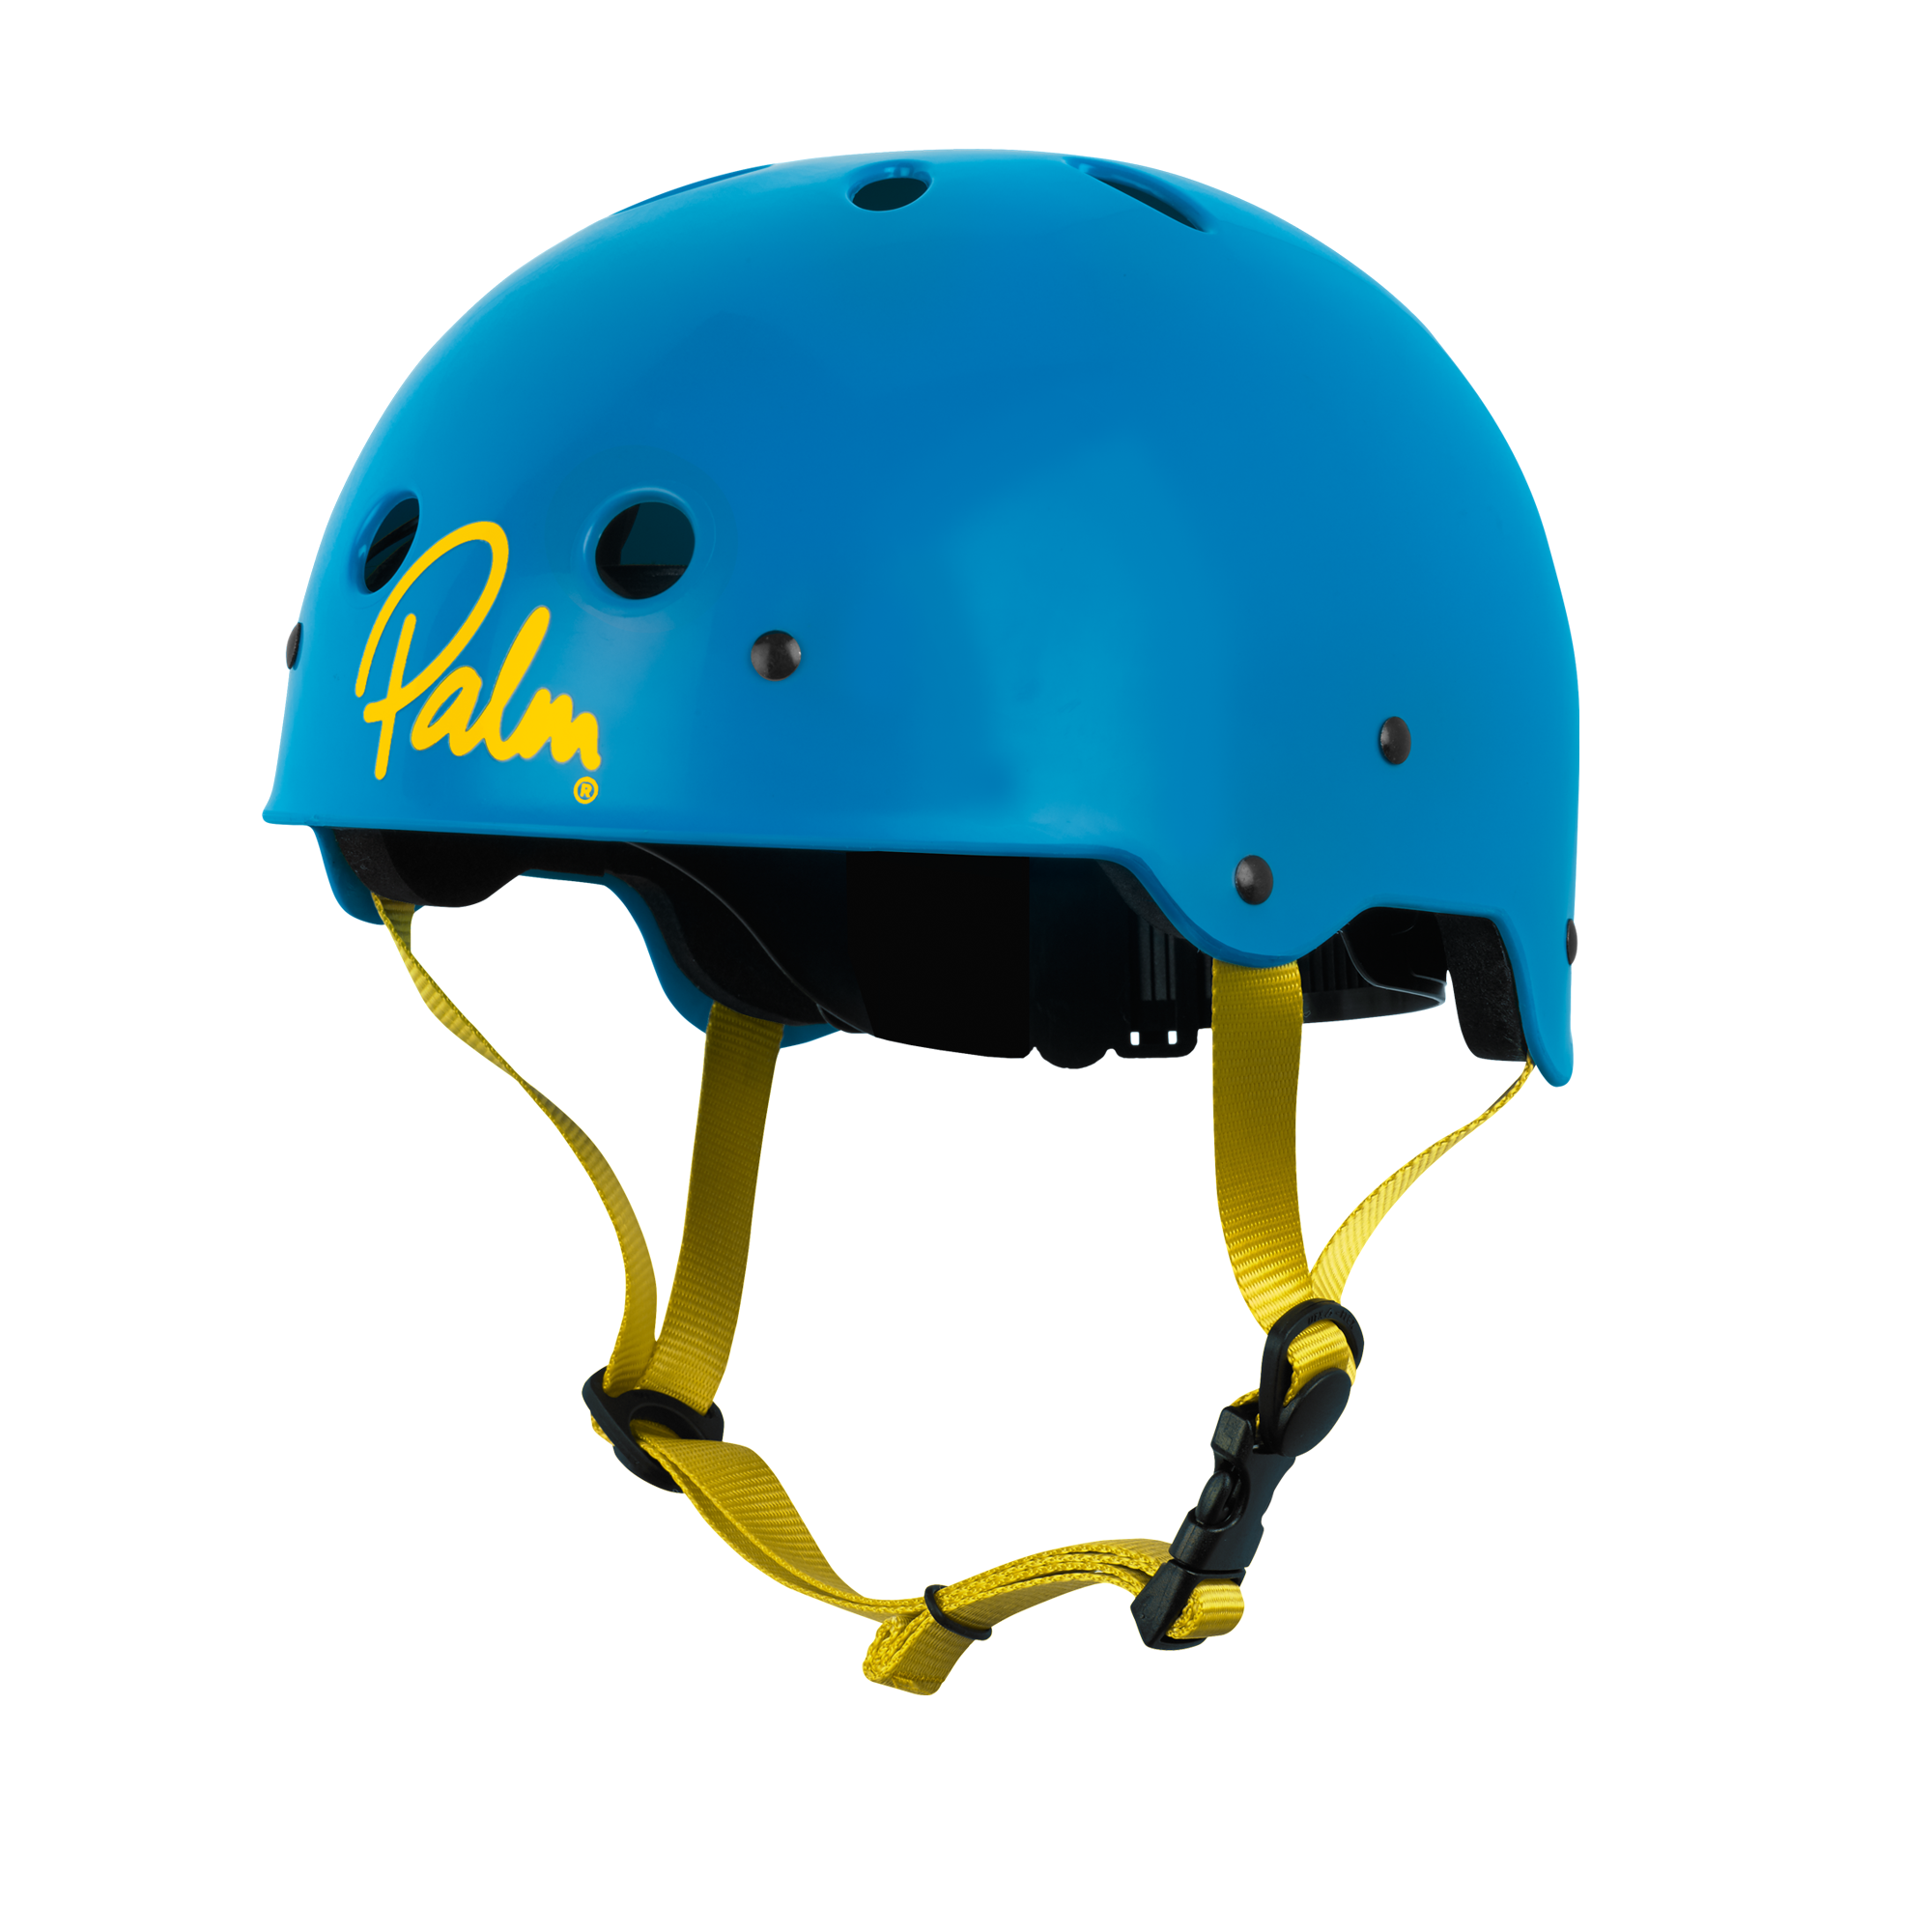 Palm AP4000 helmet half cut helmet in blue